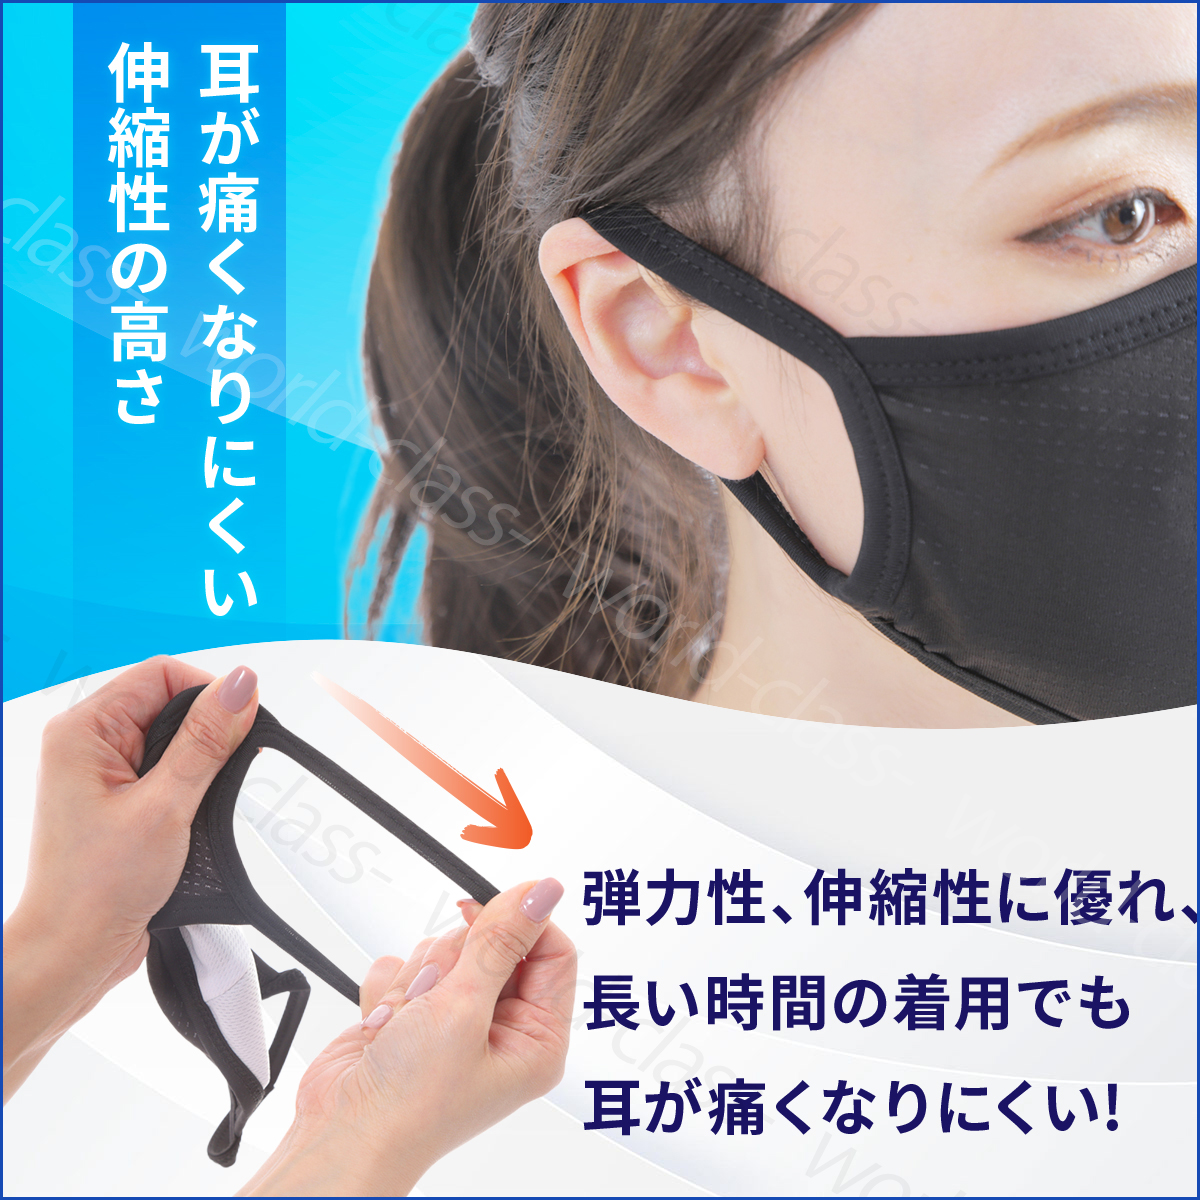 スポーツマスク 5枚セット メンズ レディース マスク ブラック 洗える おしゃれ 男女兼用 息苦しくない 速乾 グレー